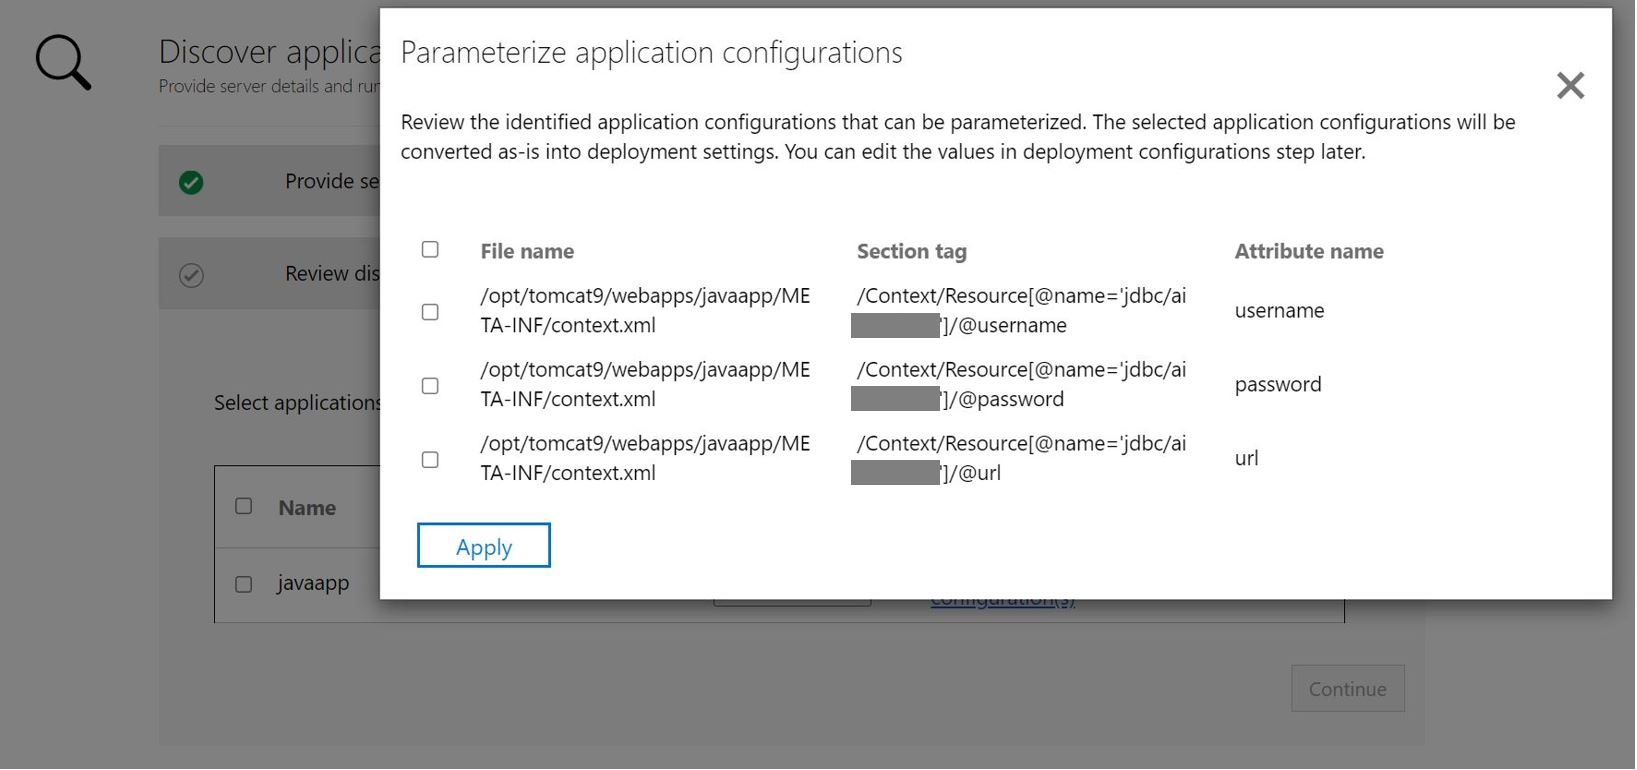 Képernyőkép az alkalmazáskonfiguráció paraméterezési Java-alkalmazásáról.